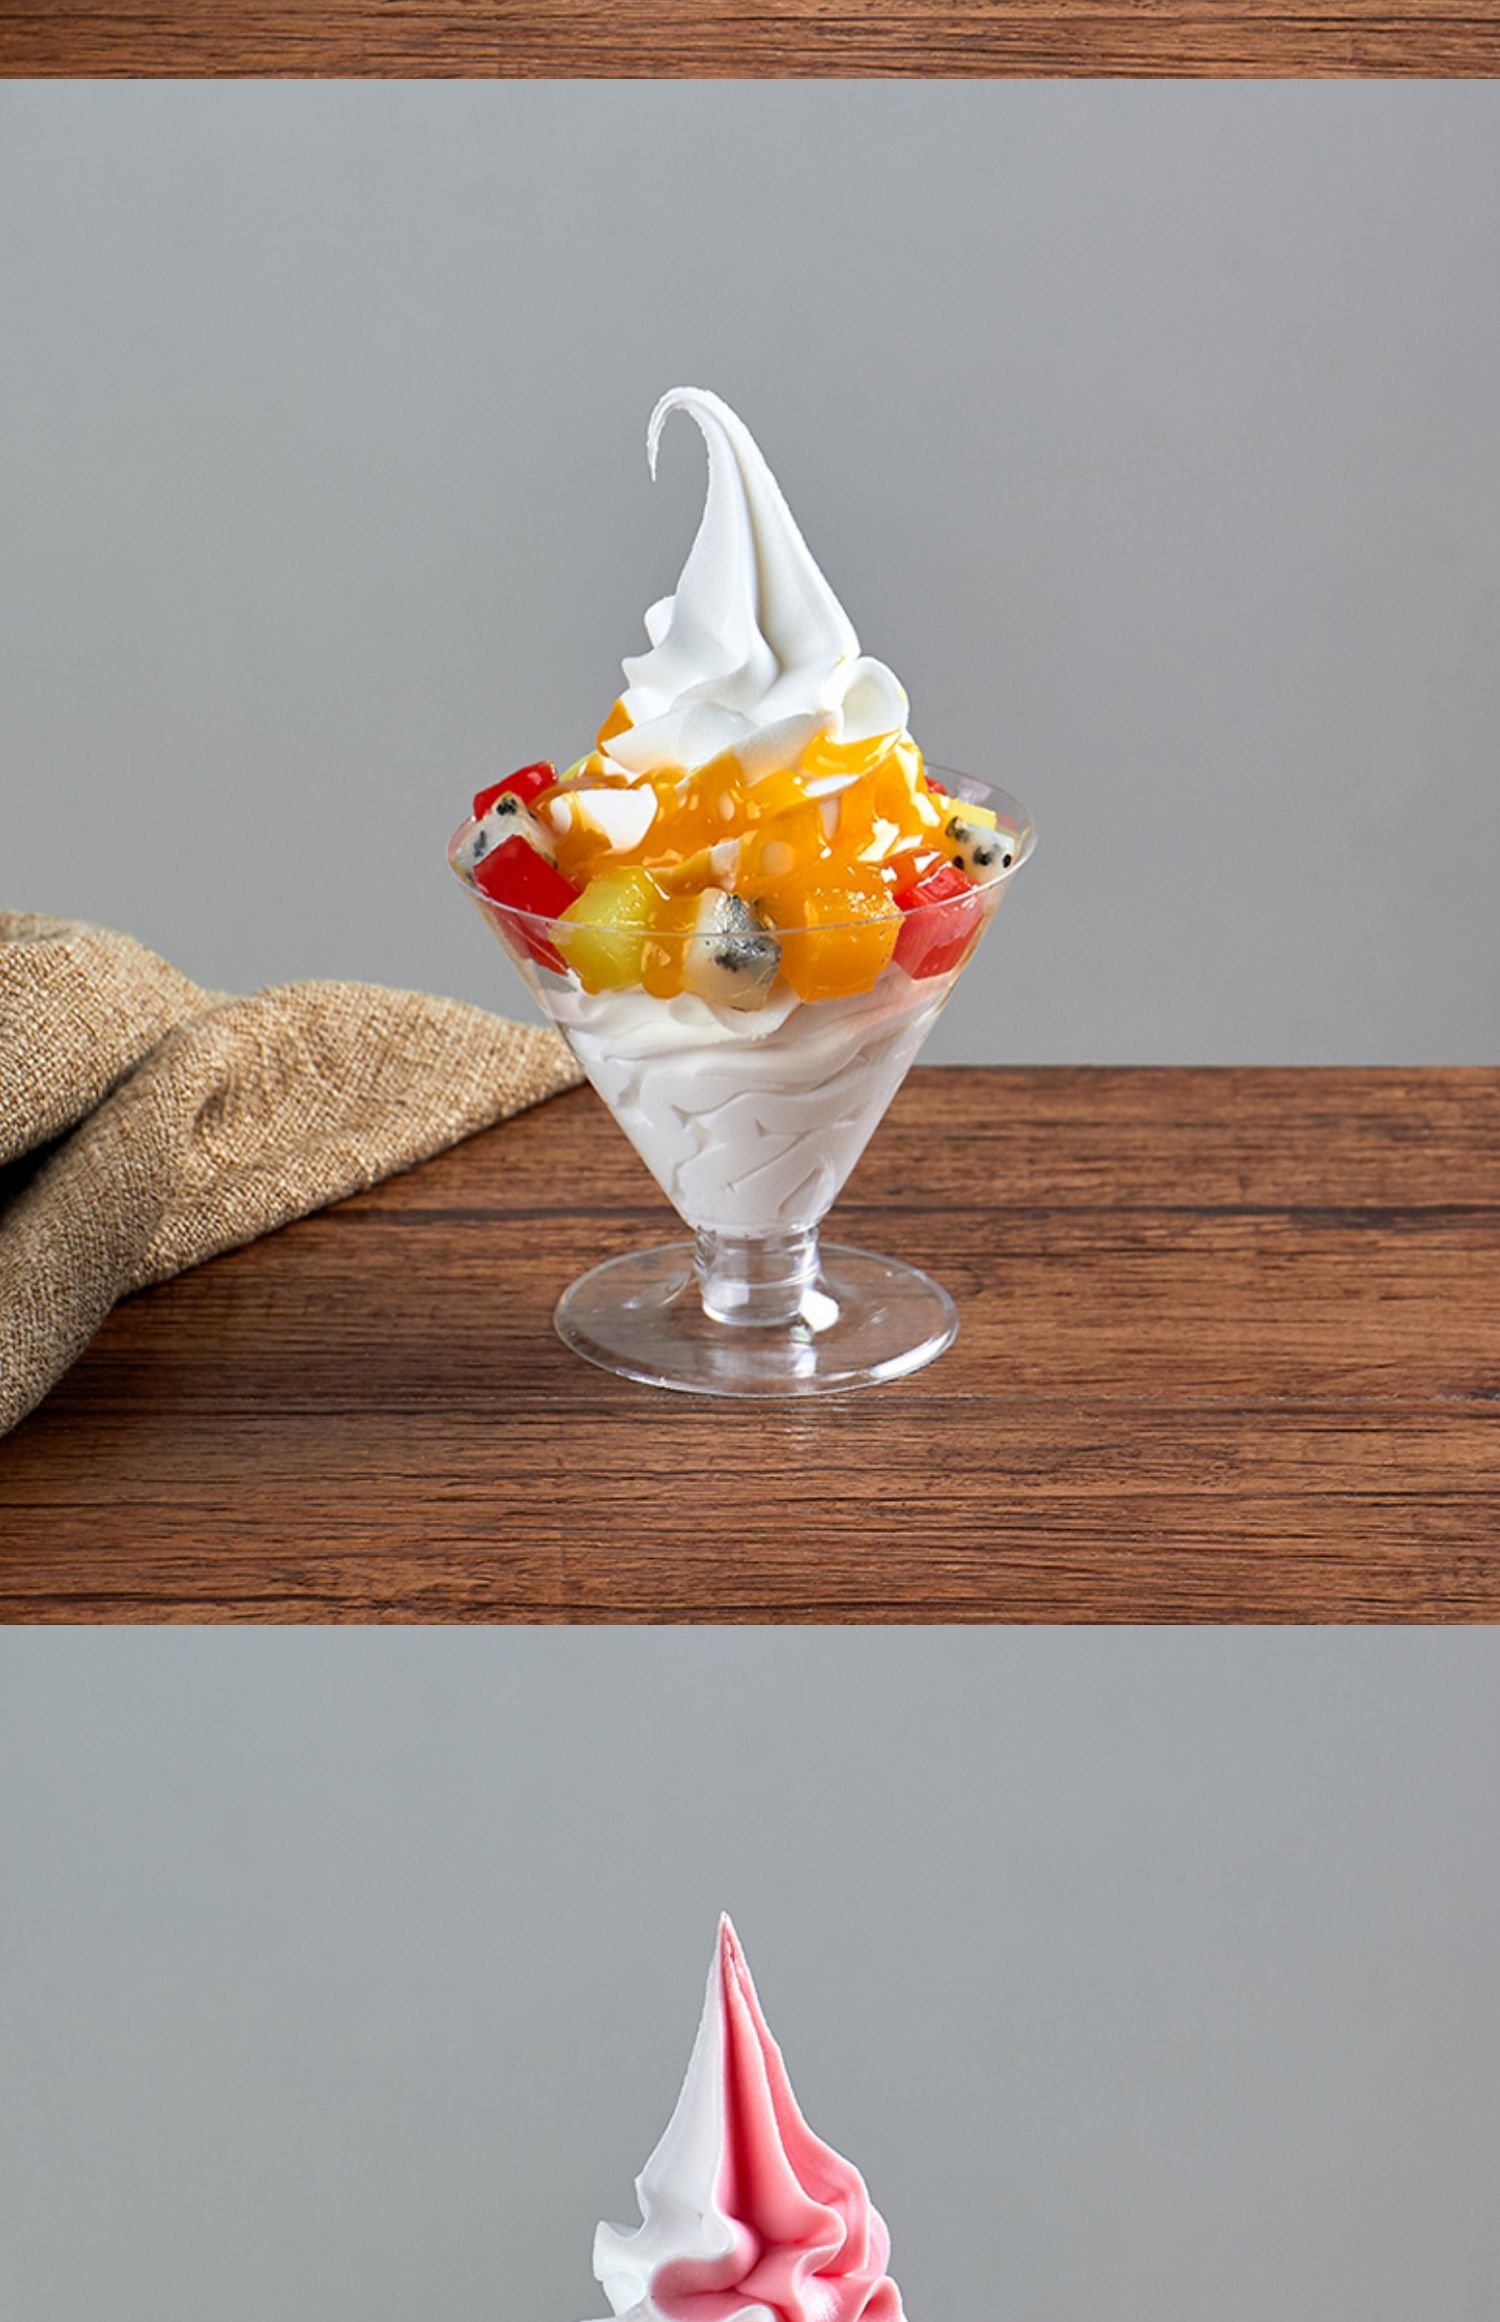 仿真圣代冰淇淋模型 kfc水果圣代杯道具冻酸奶冰激凌玩具 芒果 杂果